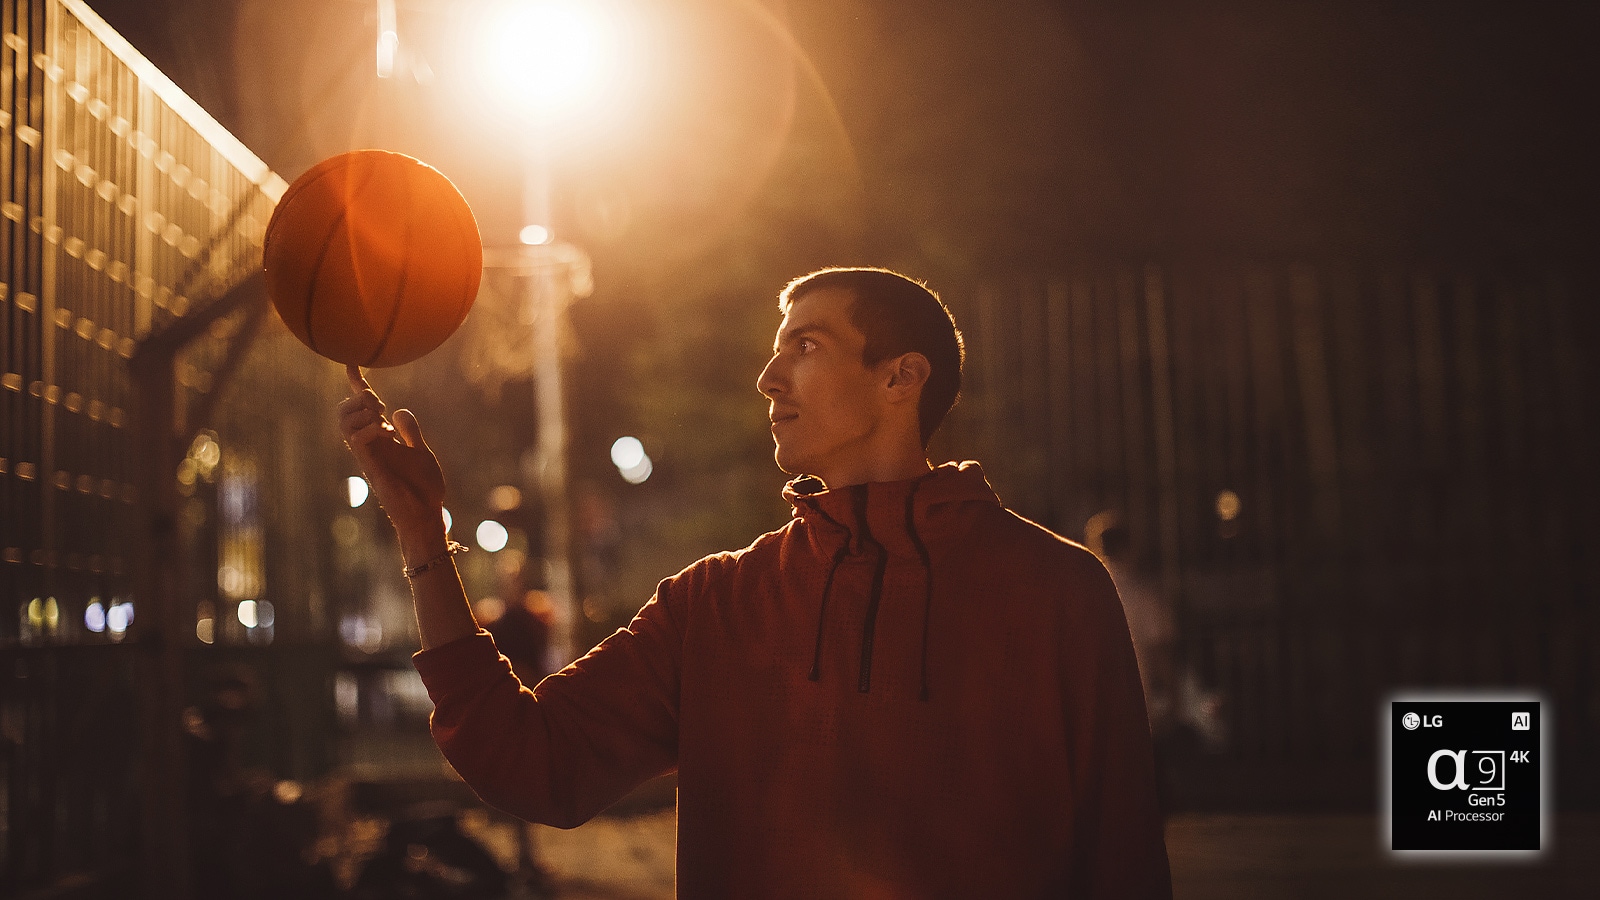 Muškarac na košarkaškom igralištu po noći vrti košarkašku loptu na prstu 